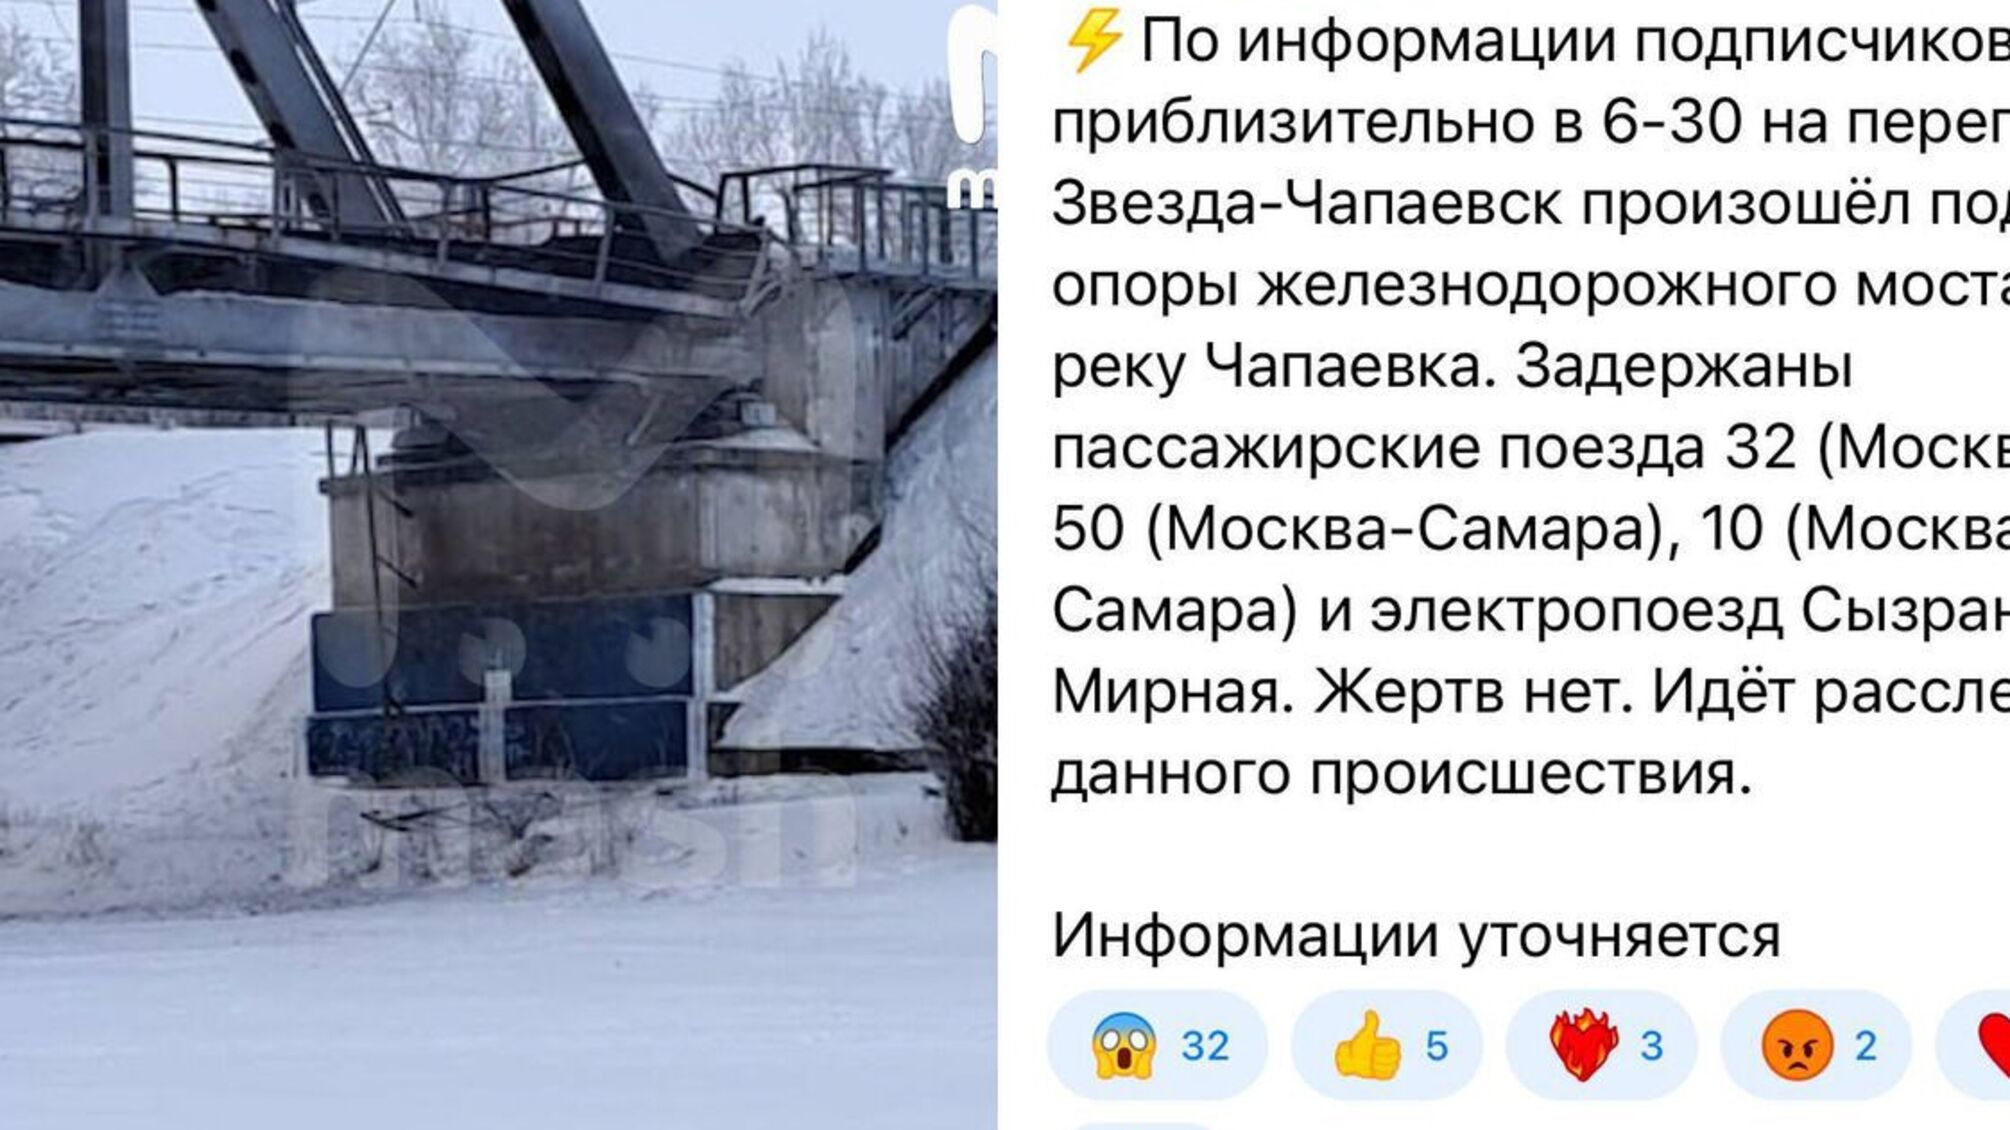 В Самарской области рф подорвали опору железнодорожного моста (фото)